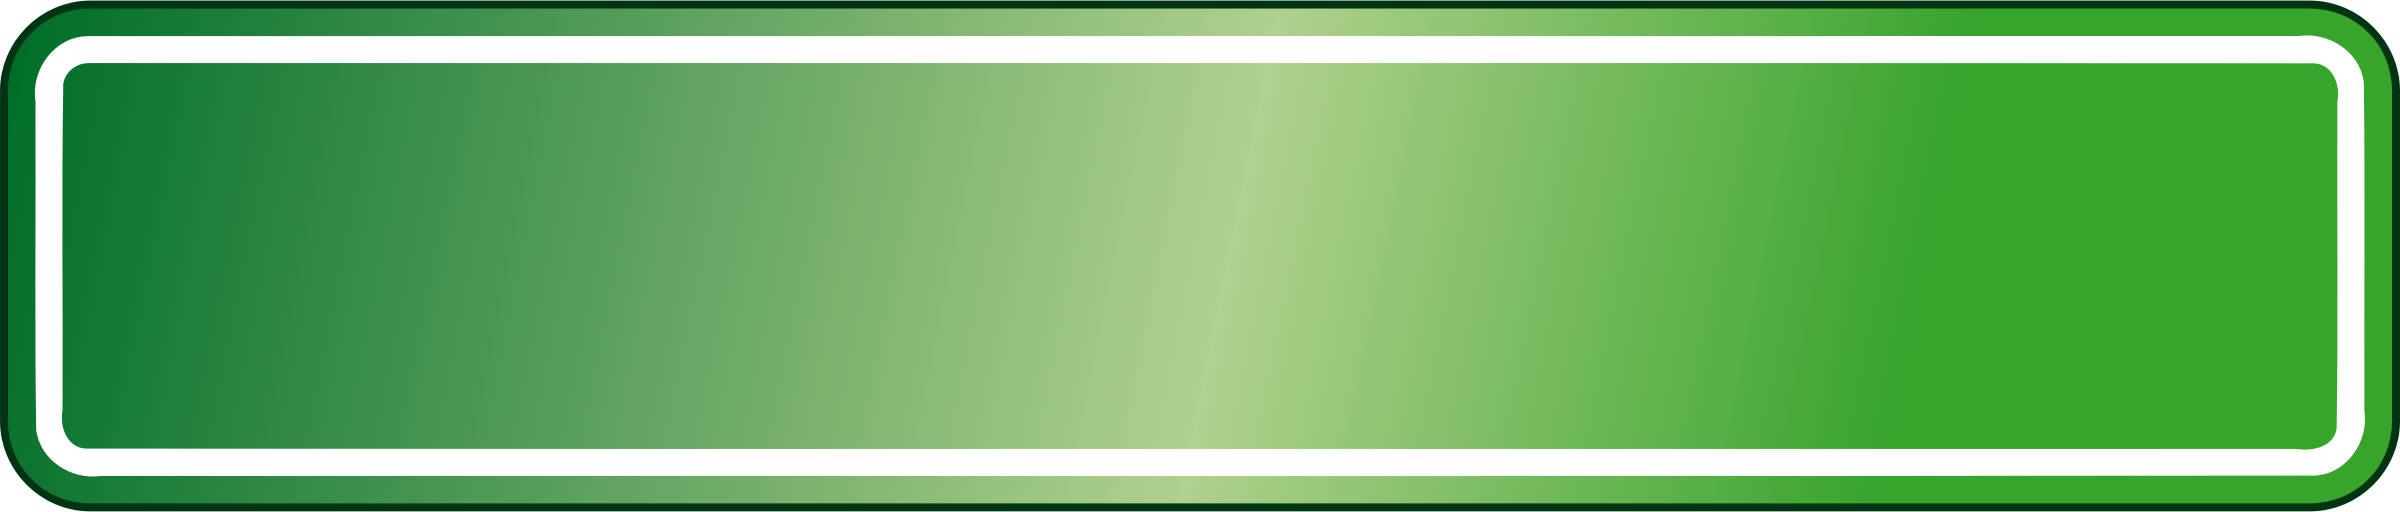 Зеленая полоска. Полоса зеленого цвета. Зеленая табличка. Салатовая полоса. Форма баннера